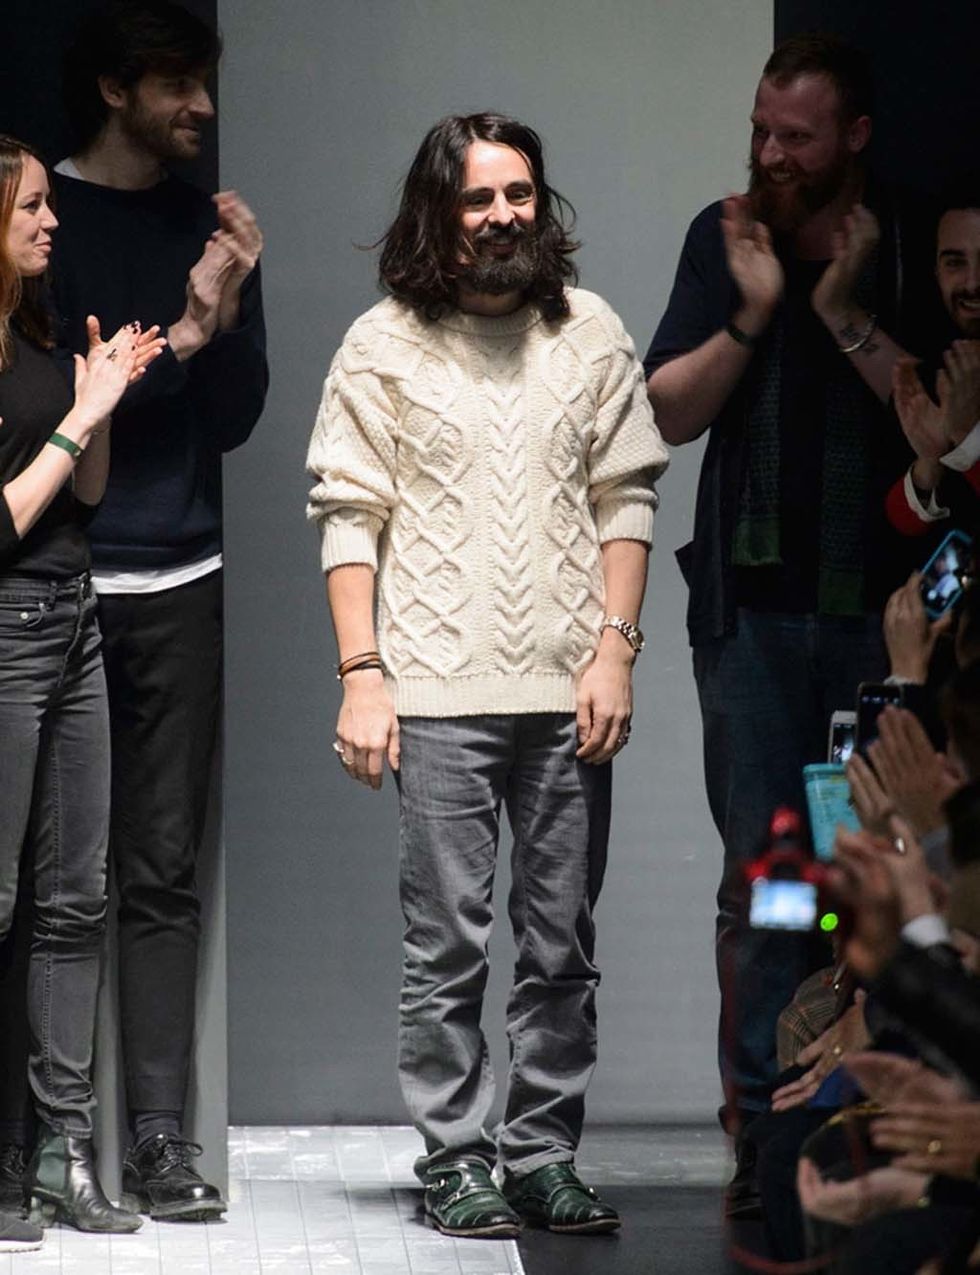 <p>2015 ha sido un año de (muchas) idas y venidas. Lo comenzamos con un nombre: Alessandro Michele, el nuevo creativo que<a href="http://www.elle.es/moda/news/alessandro-michele-nuevo-director-creativo-de-gucci" target="_blank"> cogió las riendas de Gucci tras la marcha de Frida Gianini</a>.&nbsp;</p><p>&nbsp;</p><p>&nbsp;</p>